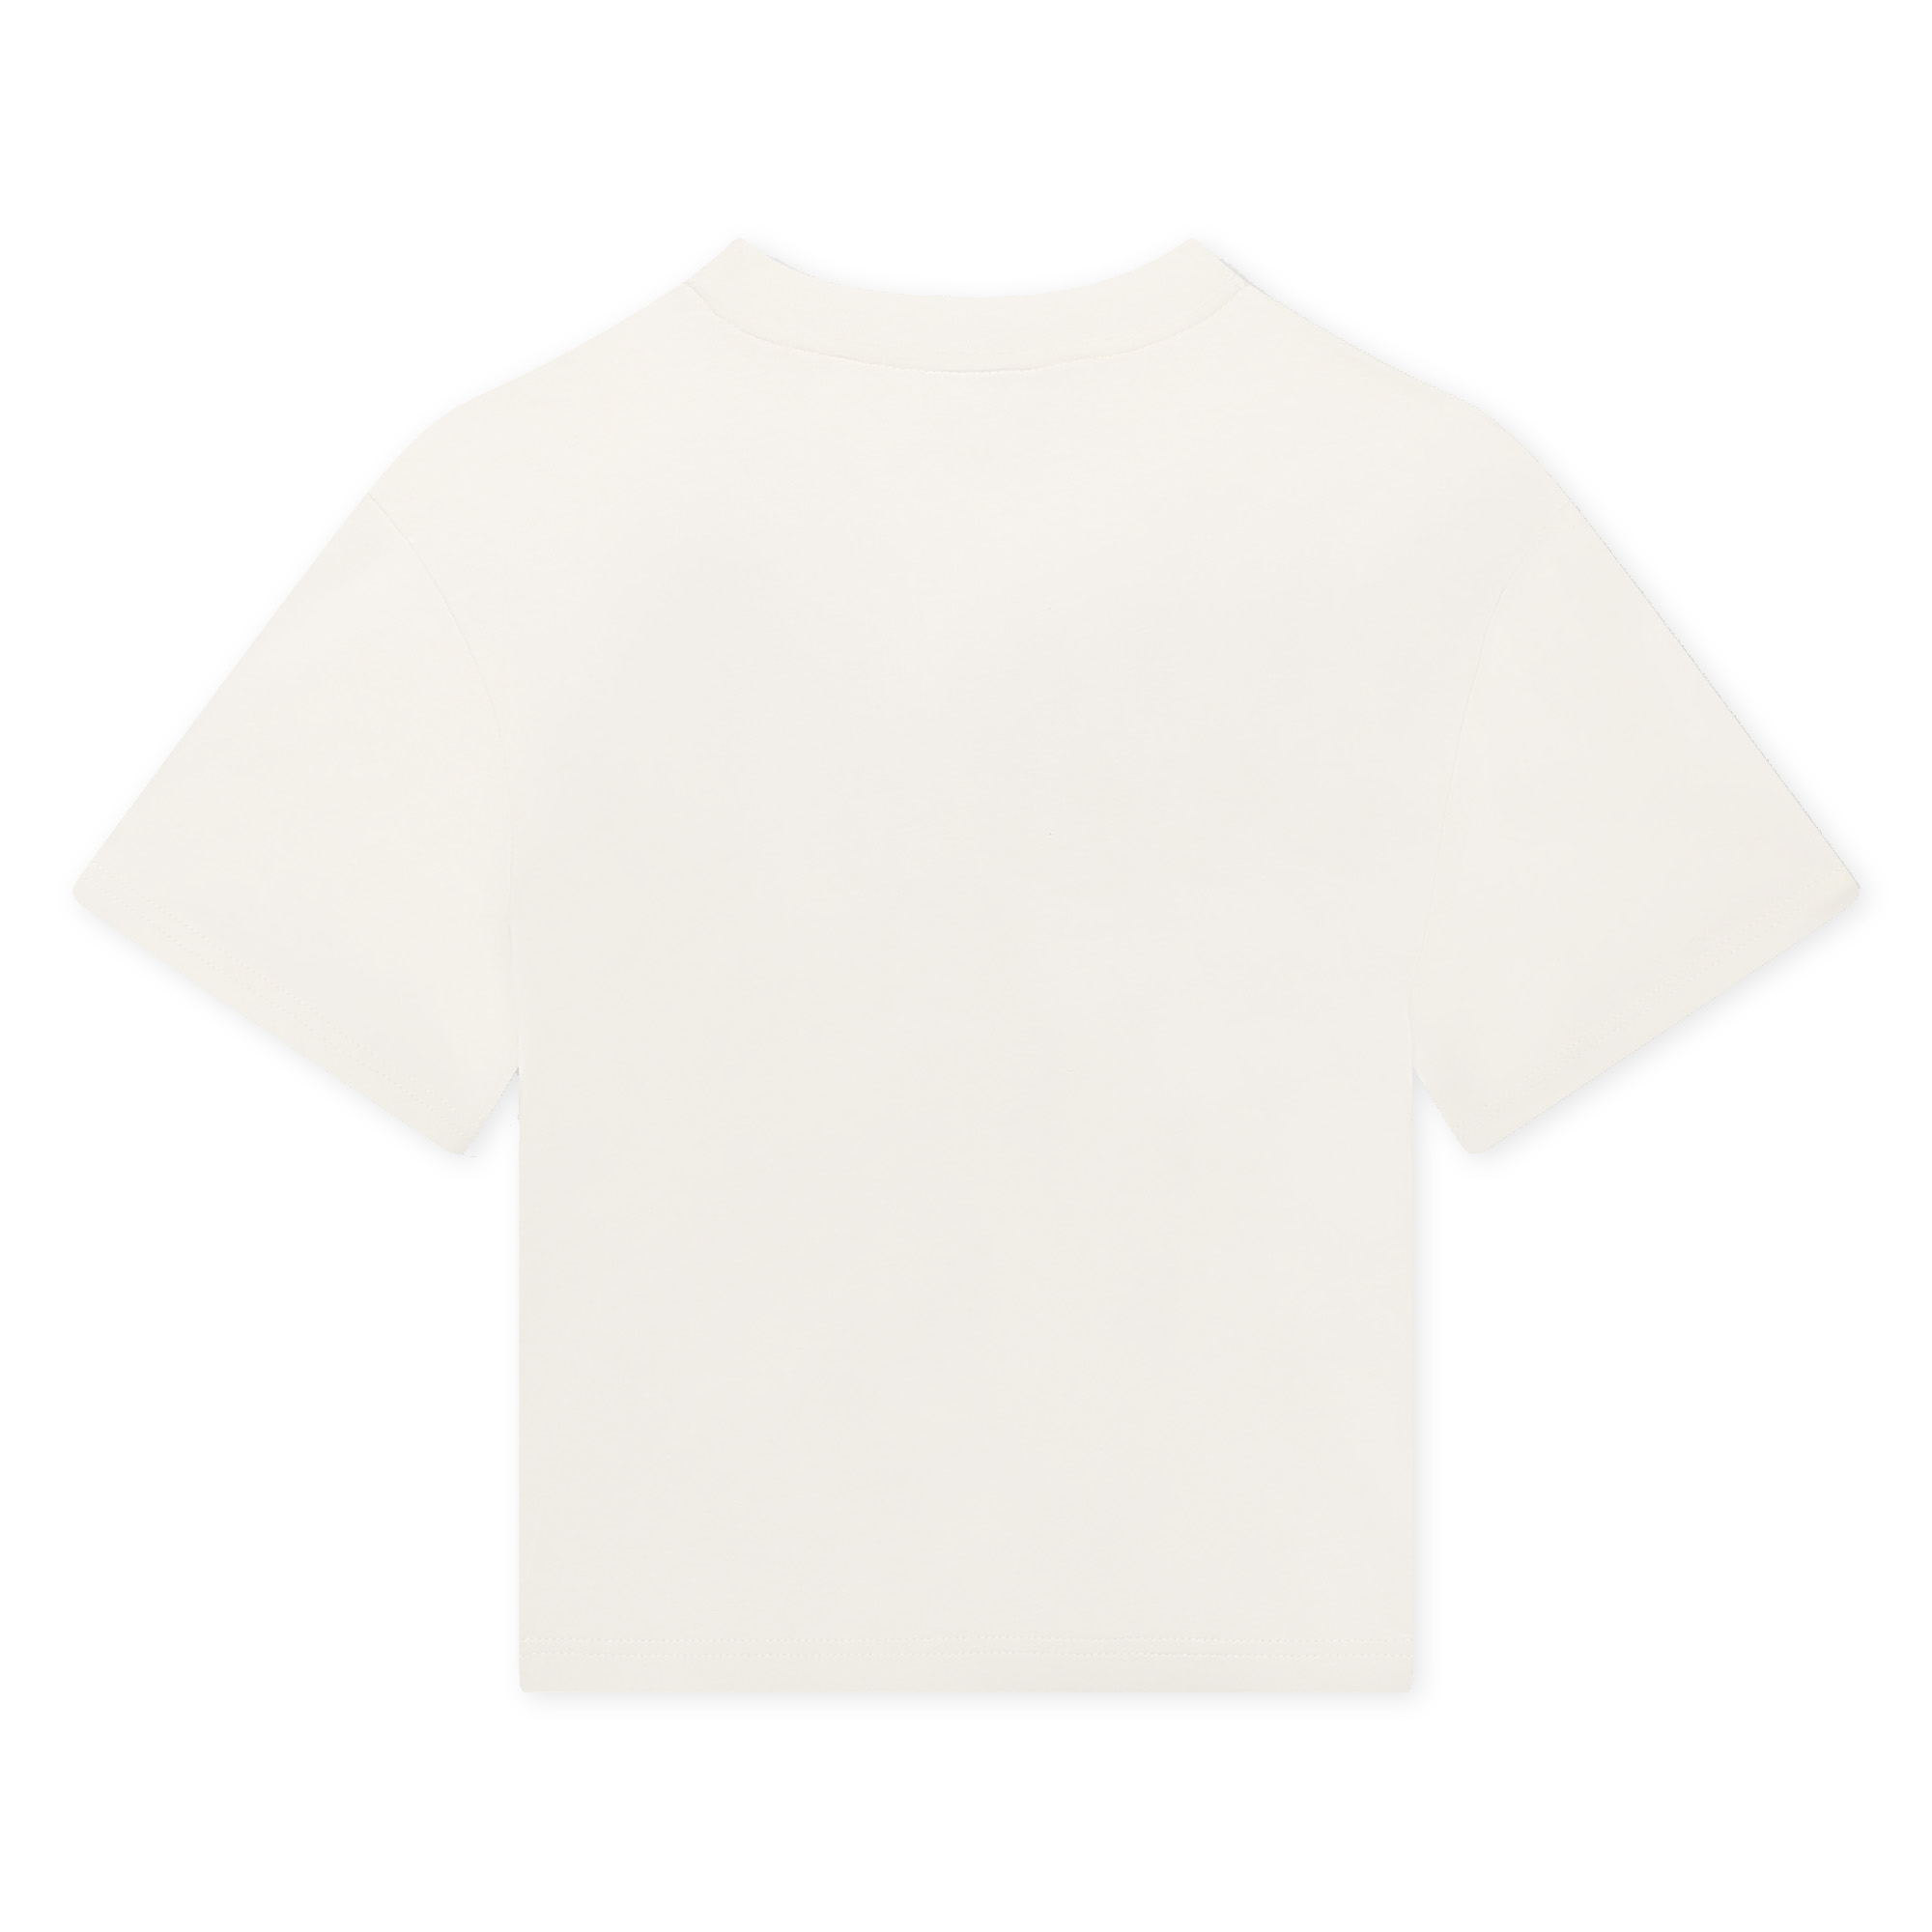 Camiseta de algodón LANVIN para NIÑO